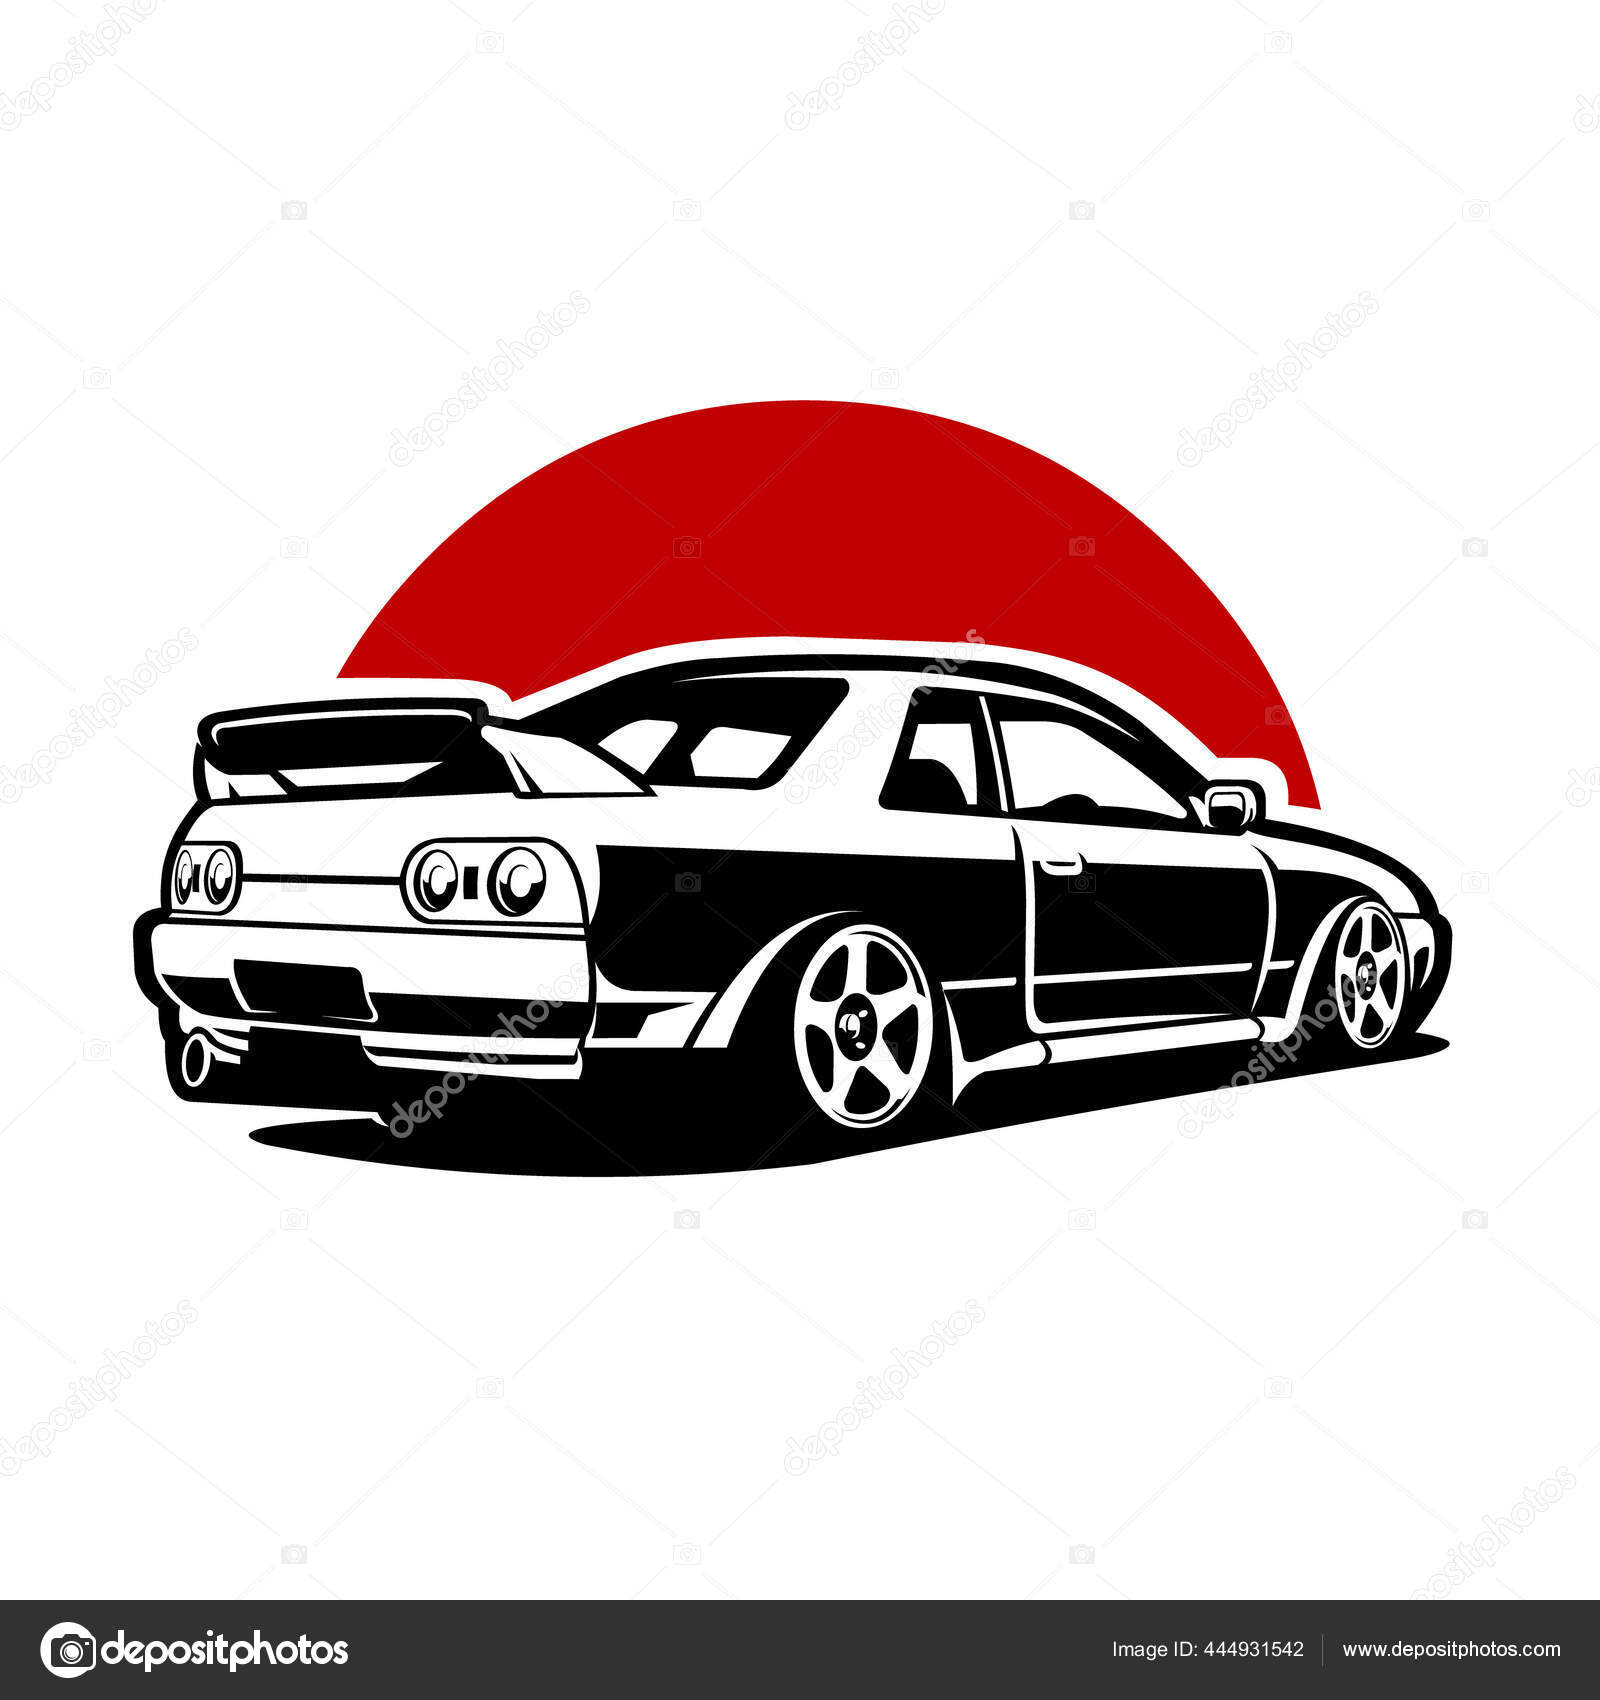 Ilustração corridas de carros esportivos no japão